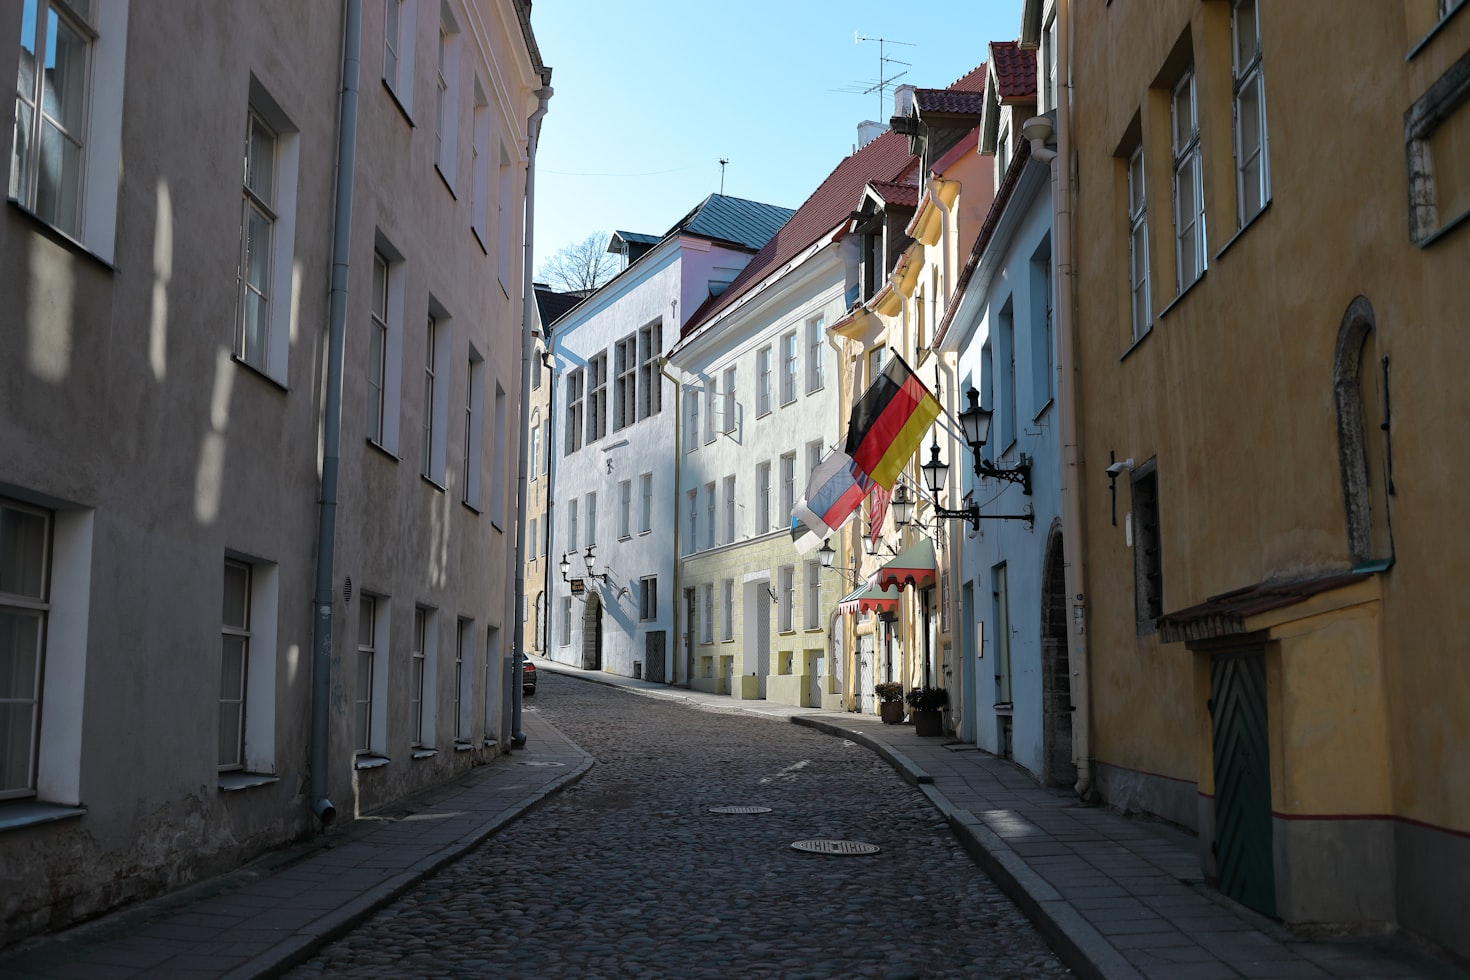 Northern Europe - Tallinn, Estonia